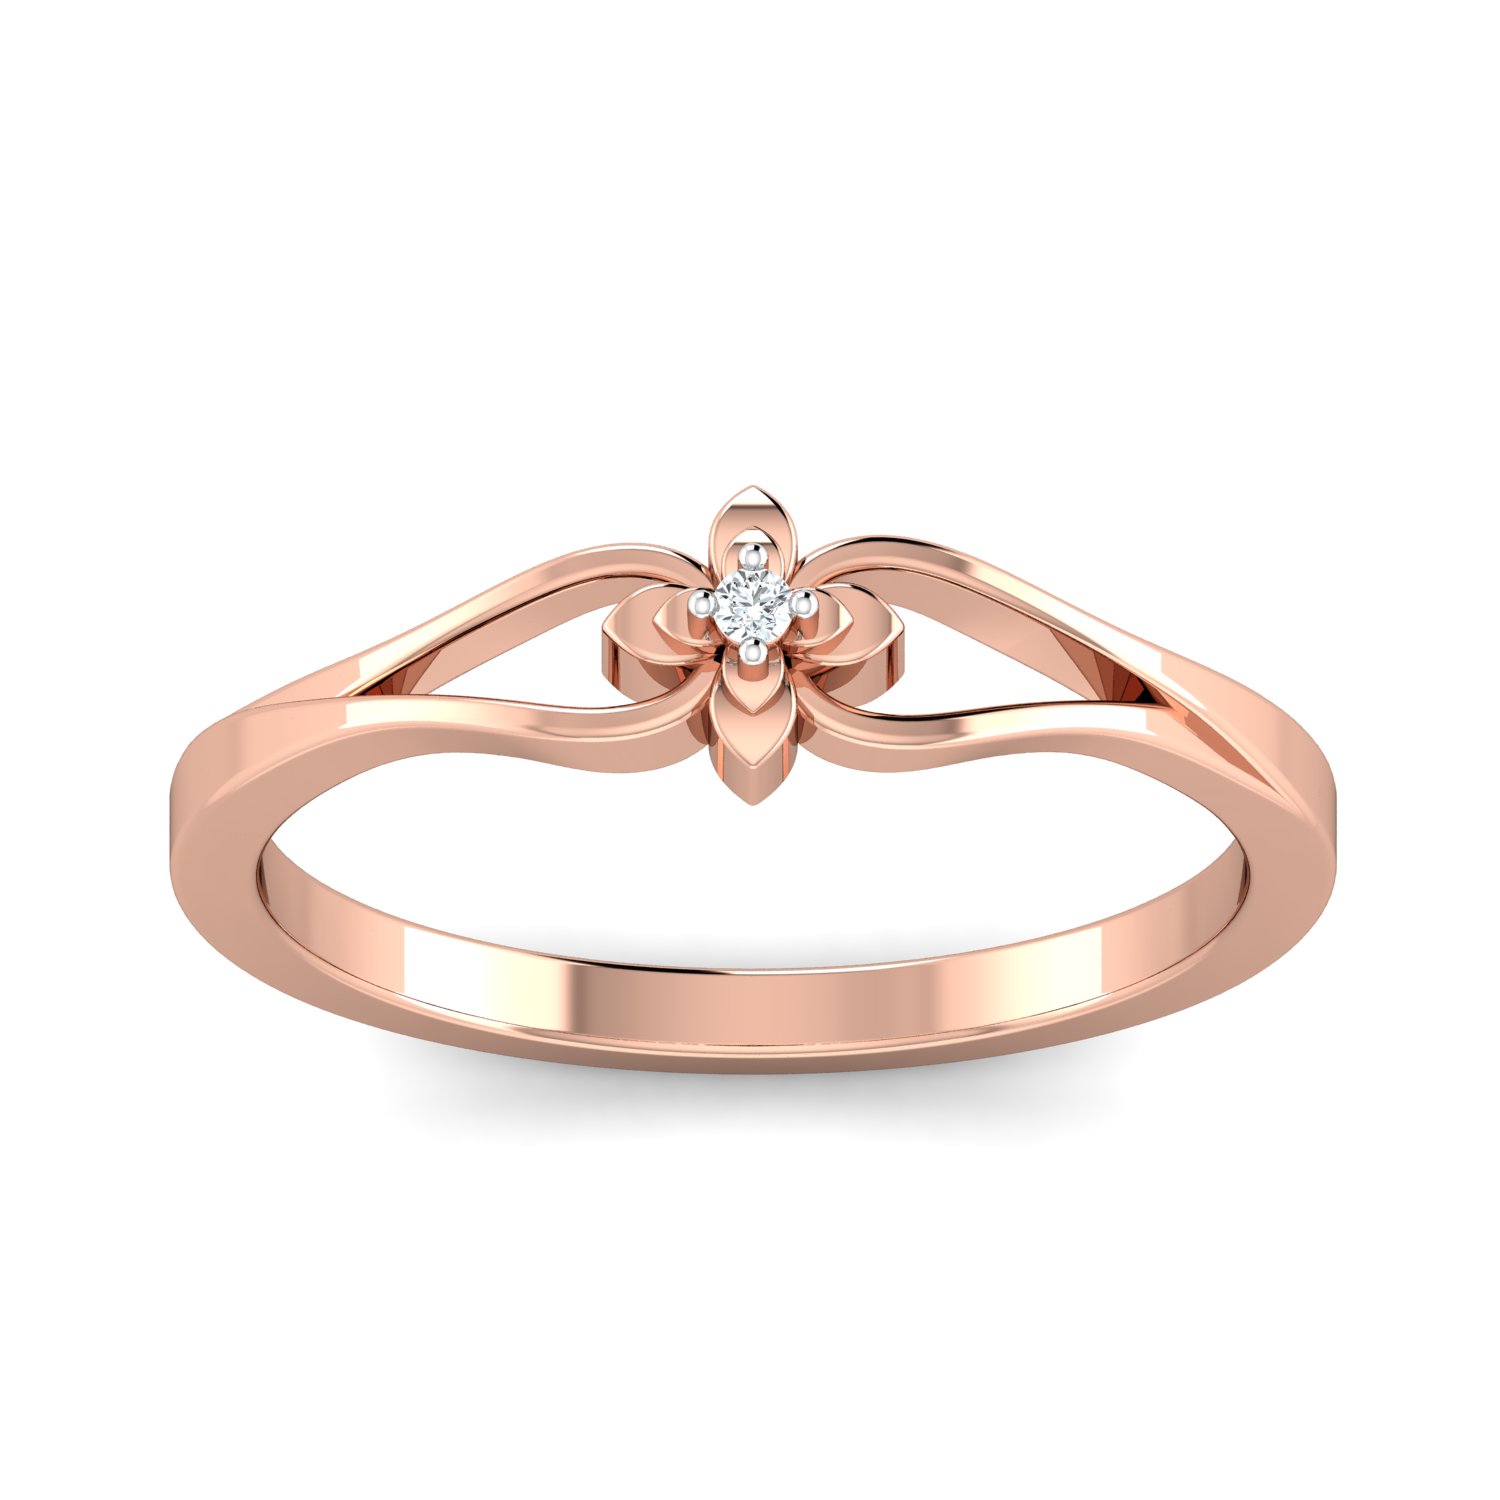 RS name gold ring for men | Rings for men, Gold bangles for women, Mens gold  rings